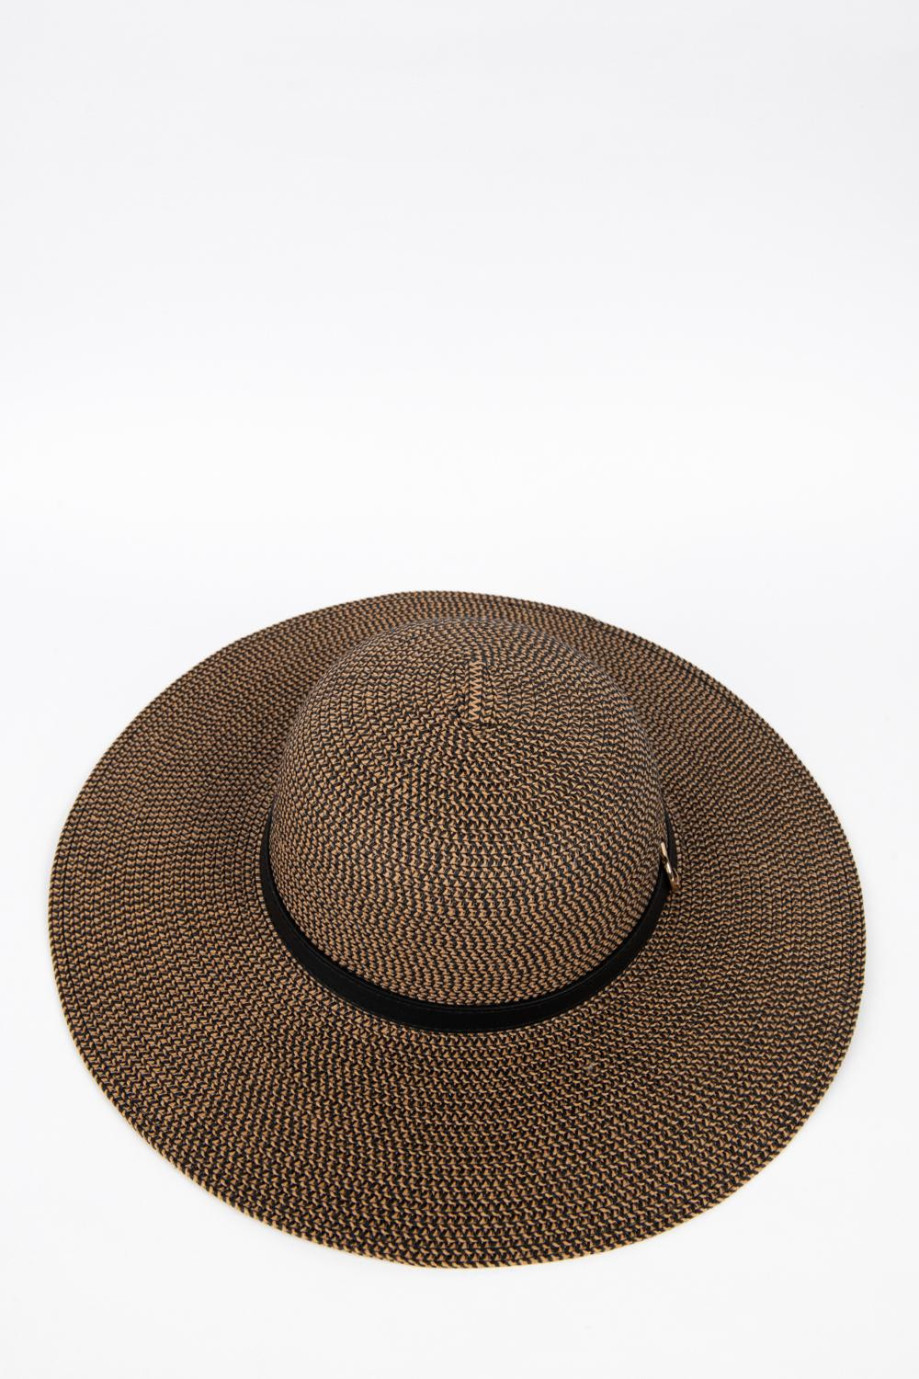 Sombrero tejido café oscuro con lazo negro y ala ancha